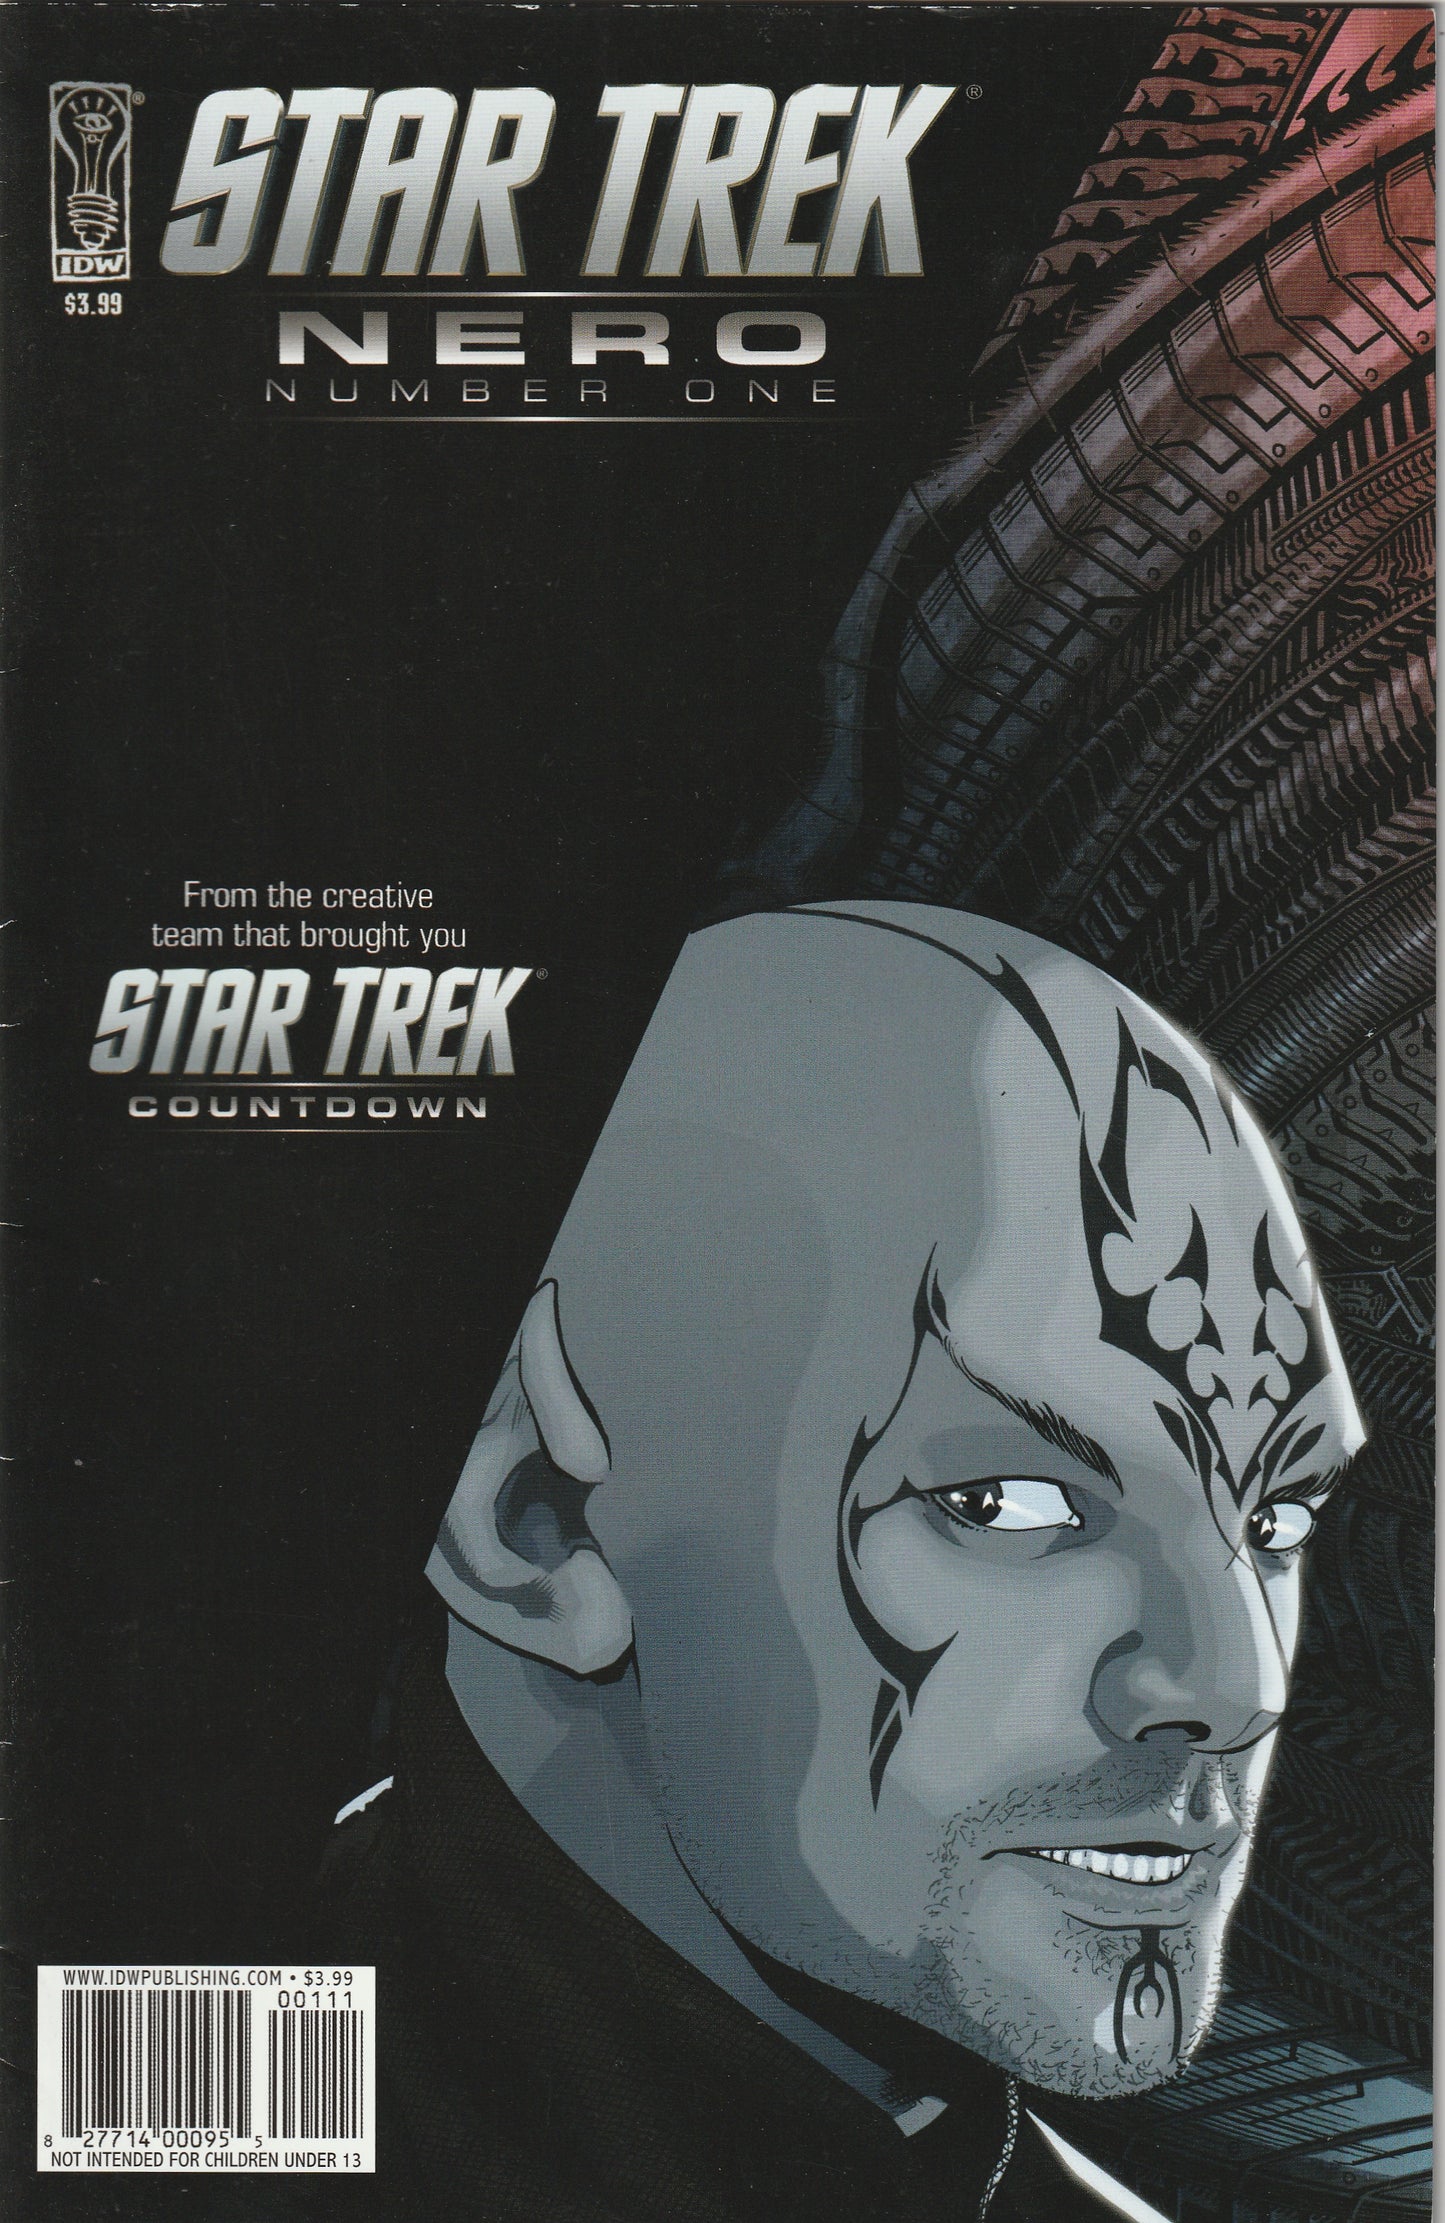 Star Trek: Nero #1 (2009)